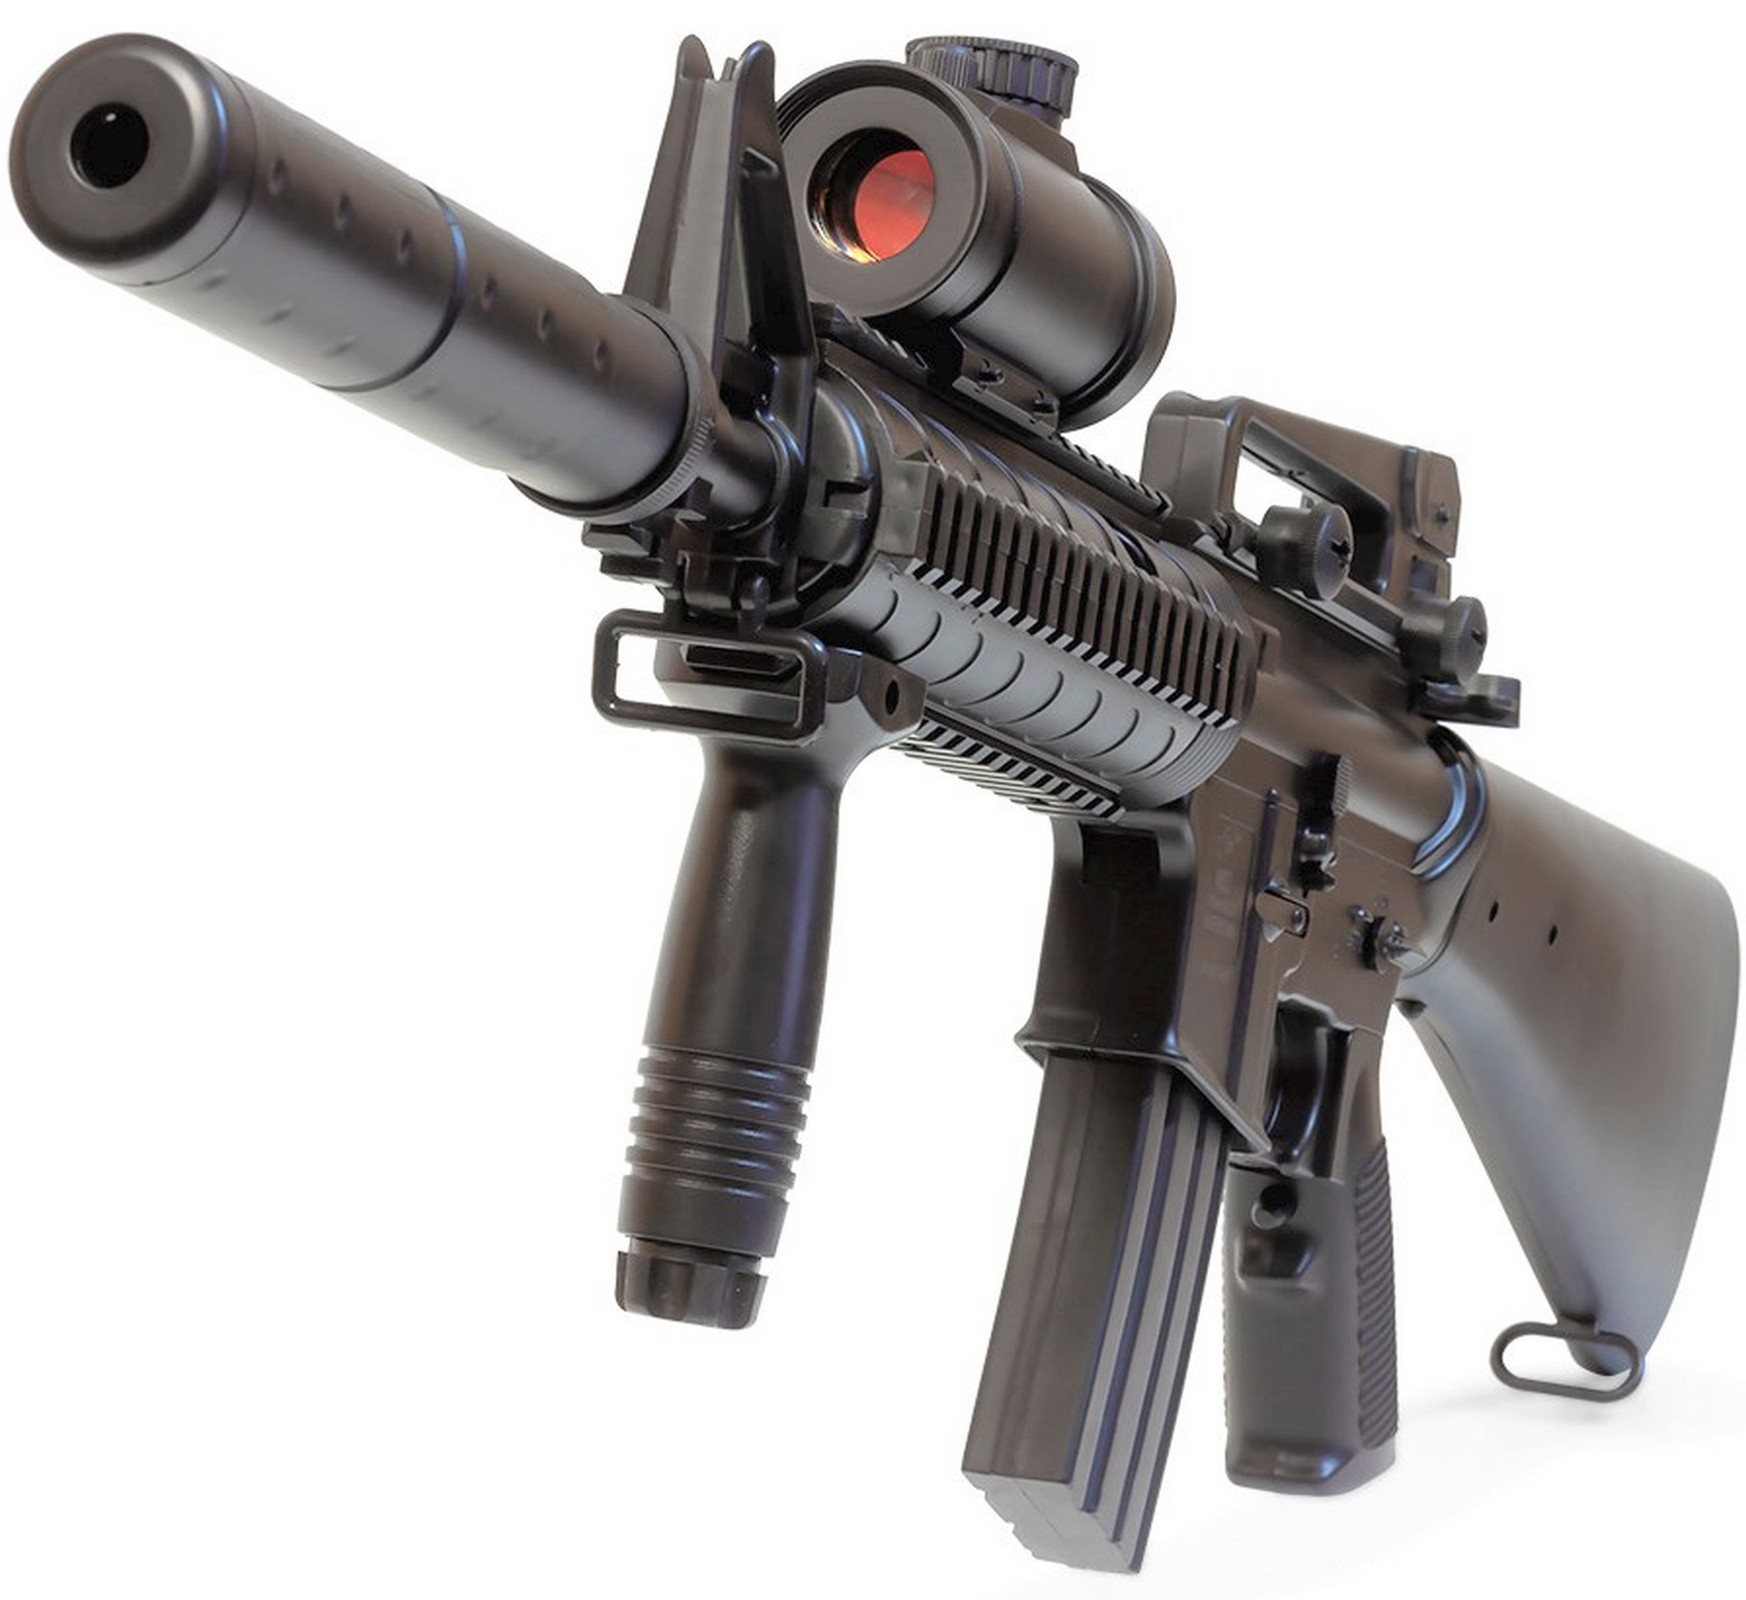 Waffen AEG Softair VOLLAUTOMATISCH Elektrisch Gewehr M83B1 Replica M16 M4 Style